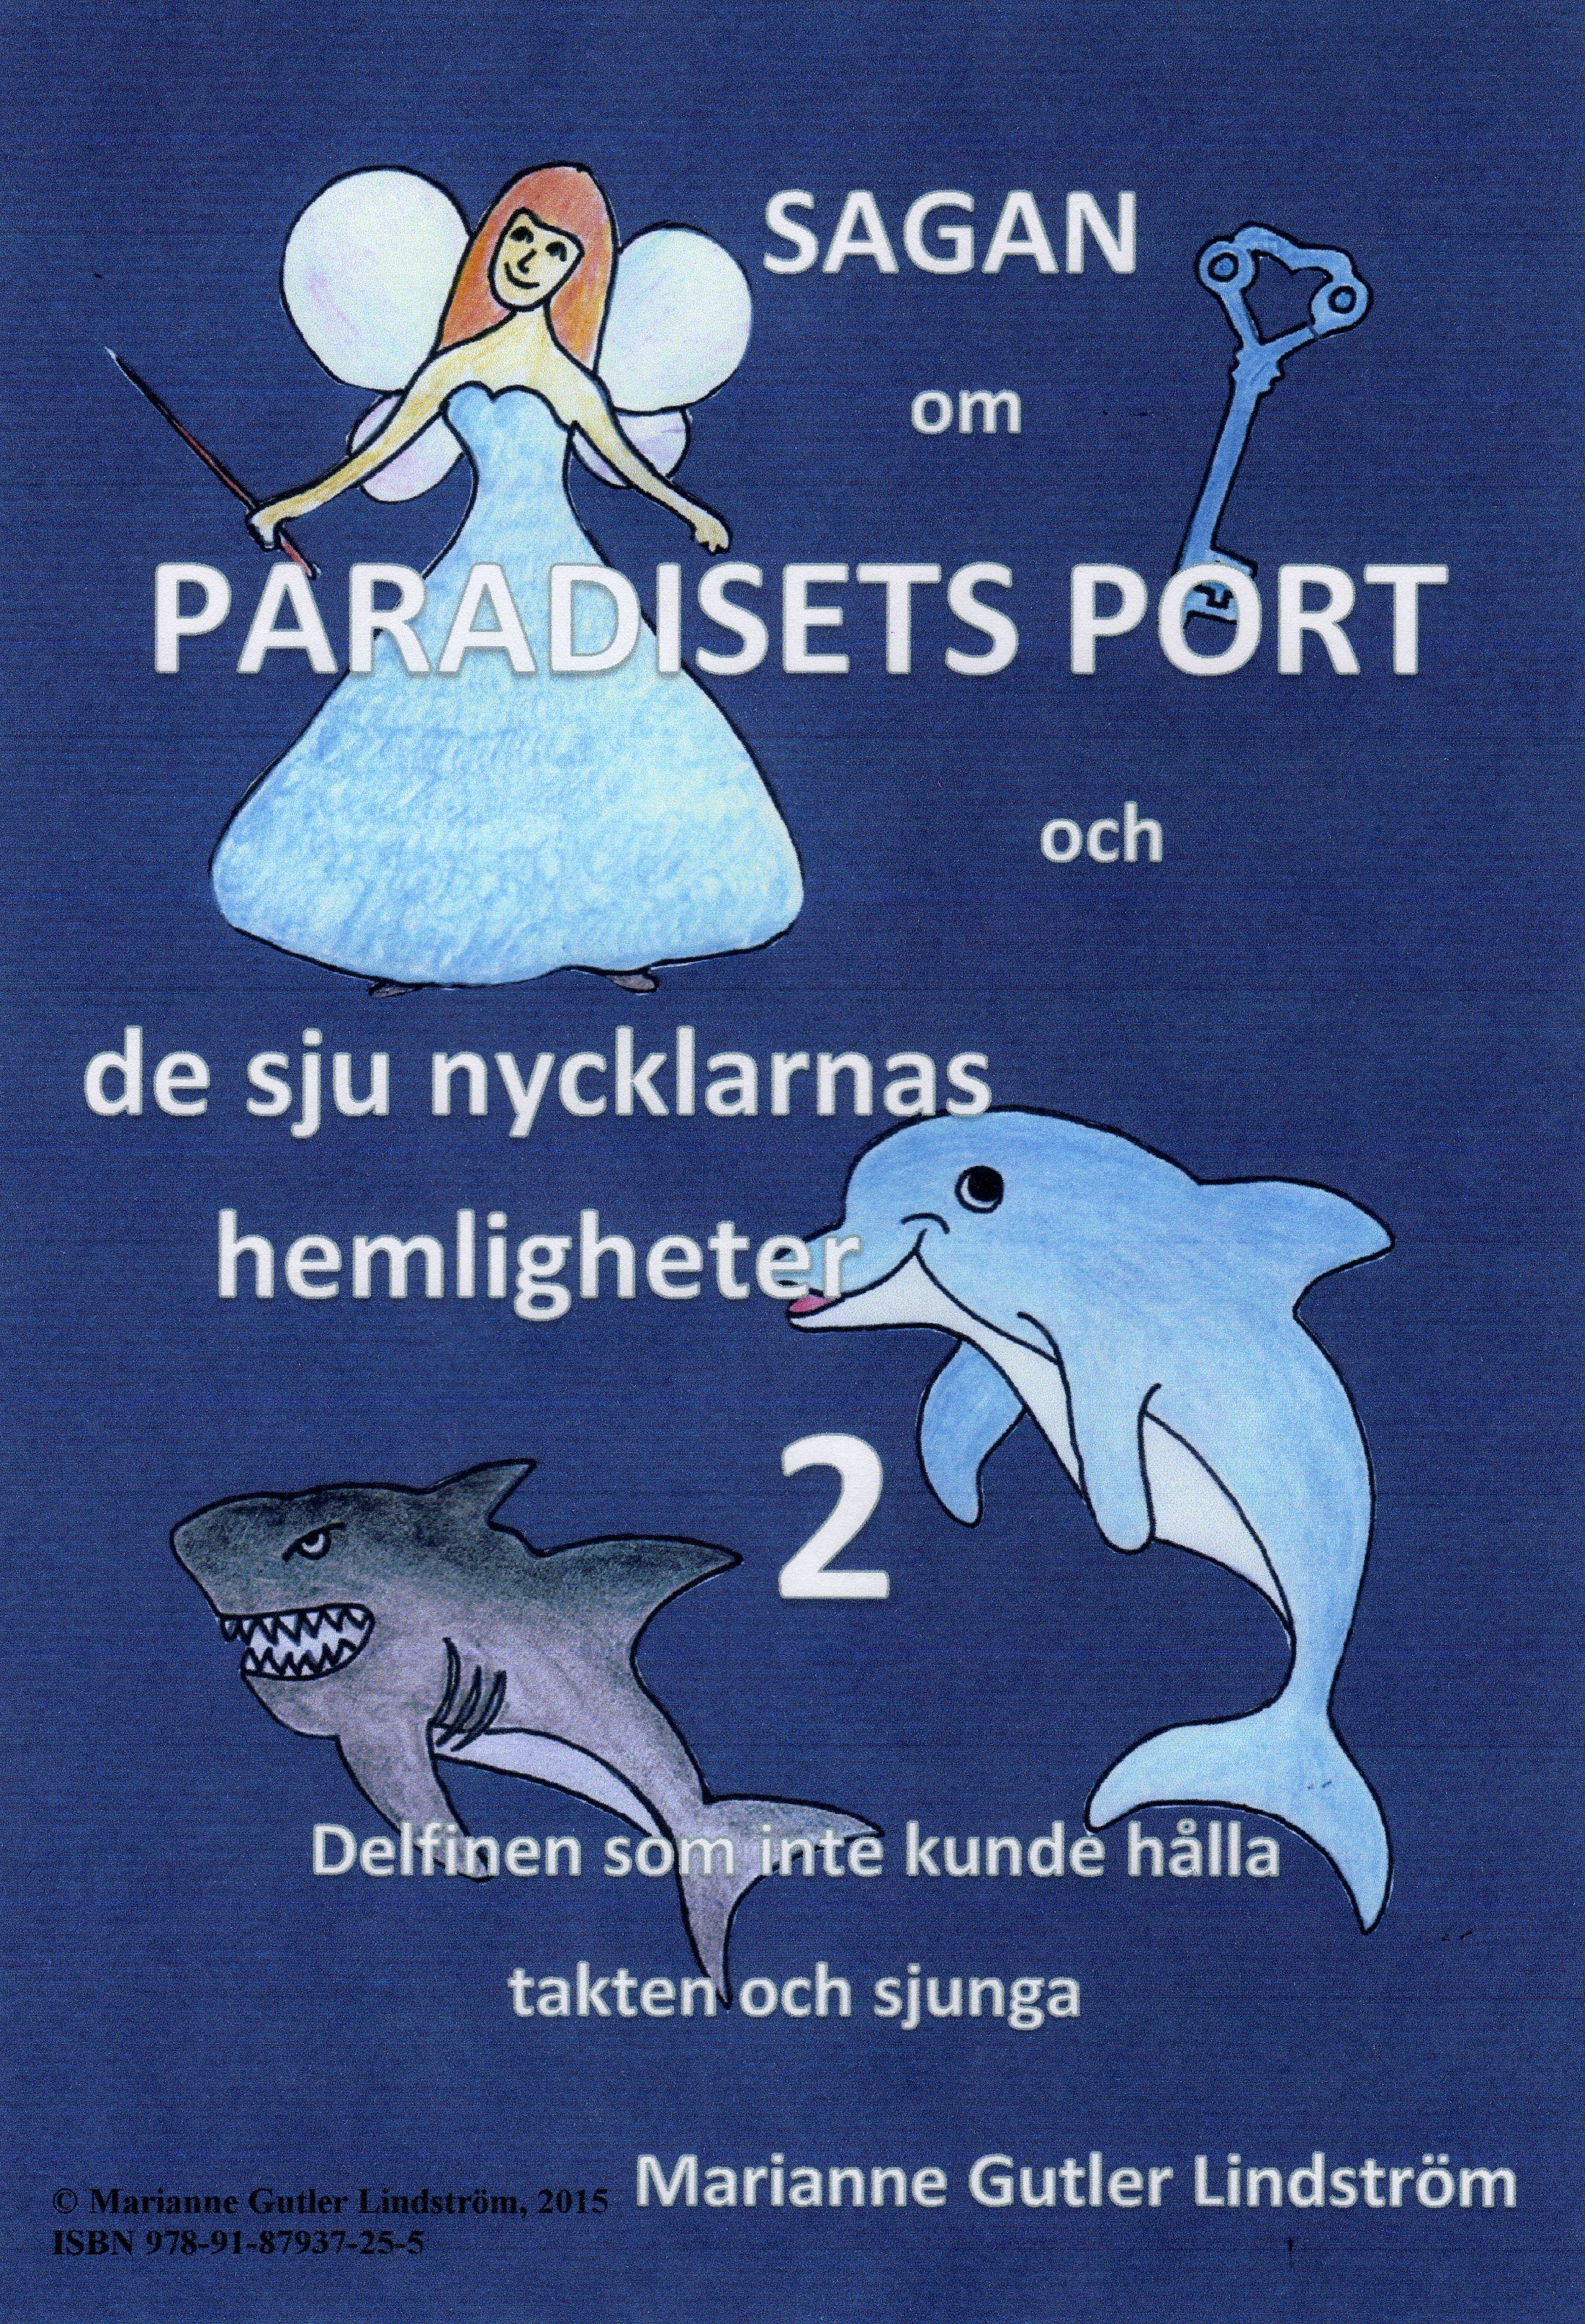 Sagan om Paradisets port 2 Delfinen som inte kunde hålla takten och sjunga, e-bog af Marianne Gutler Lindström